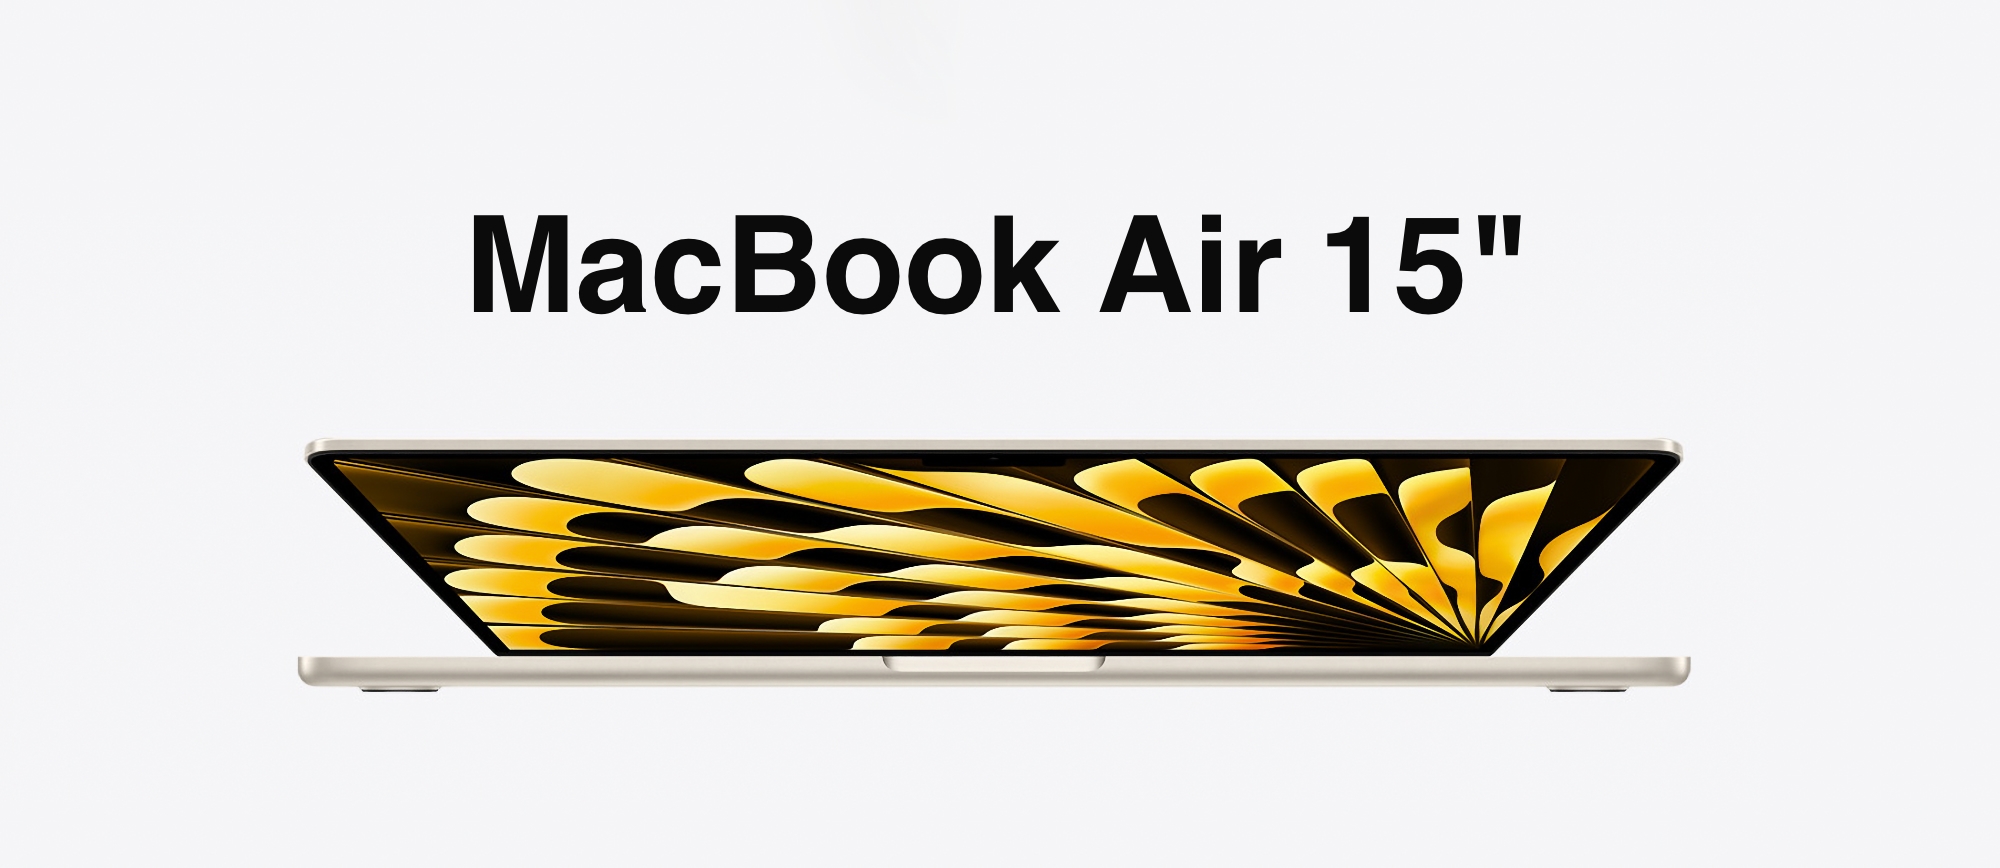 Ціна від 62 499 грн: в Україні стартував продаж 15-дюймового MacBook Air